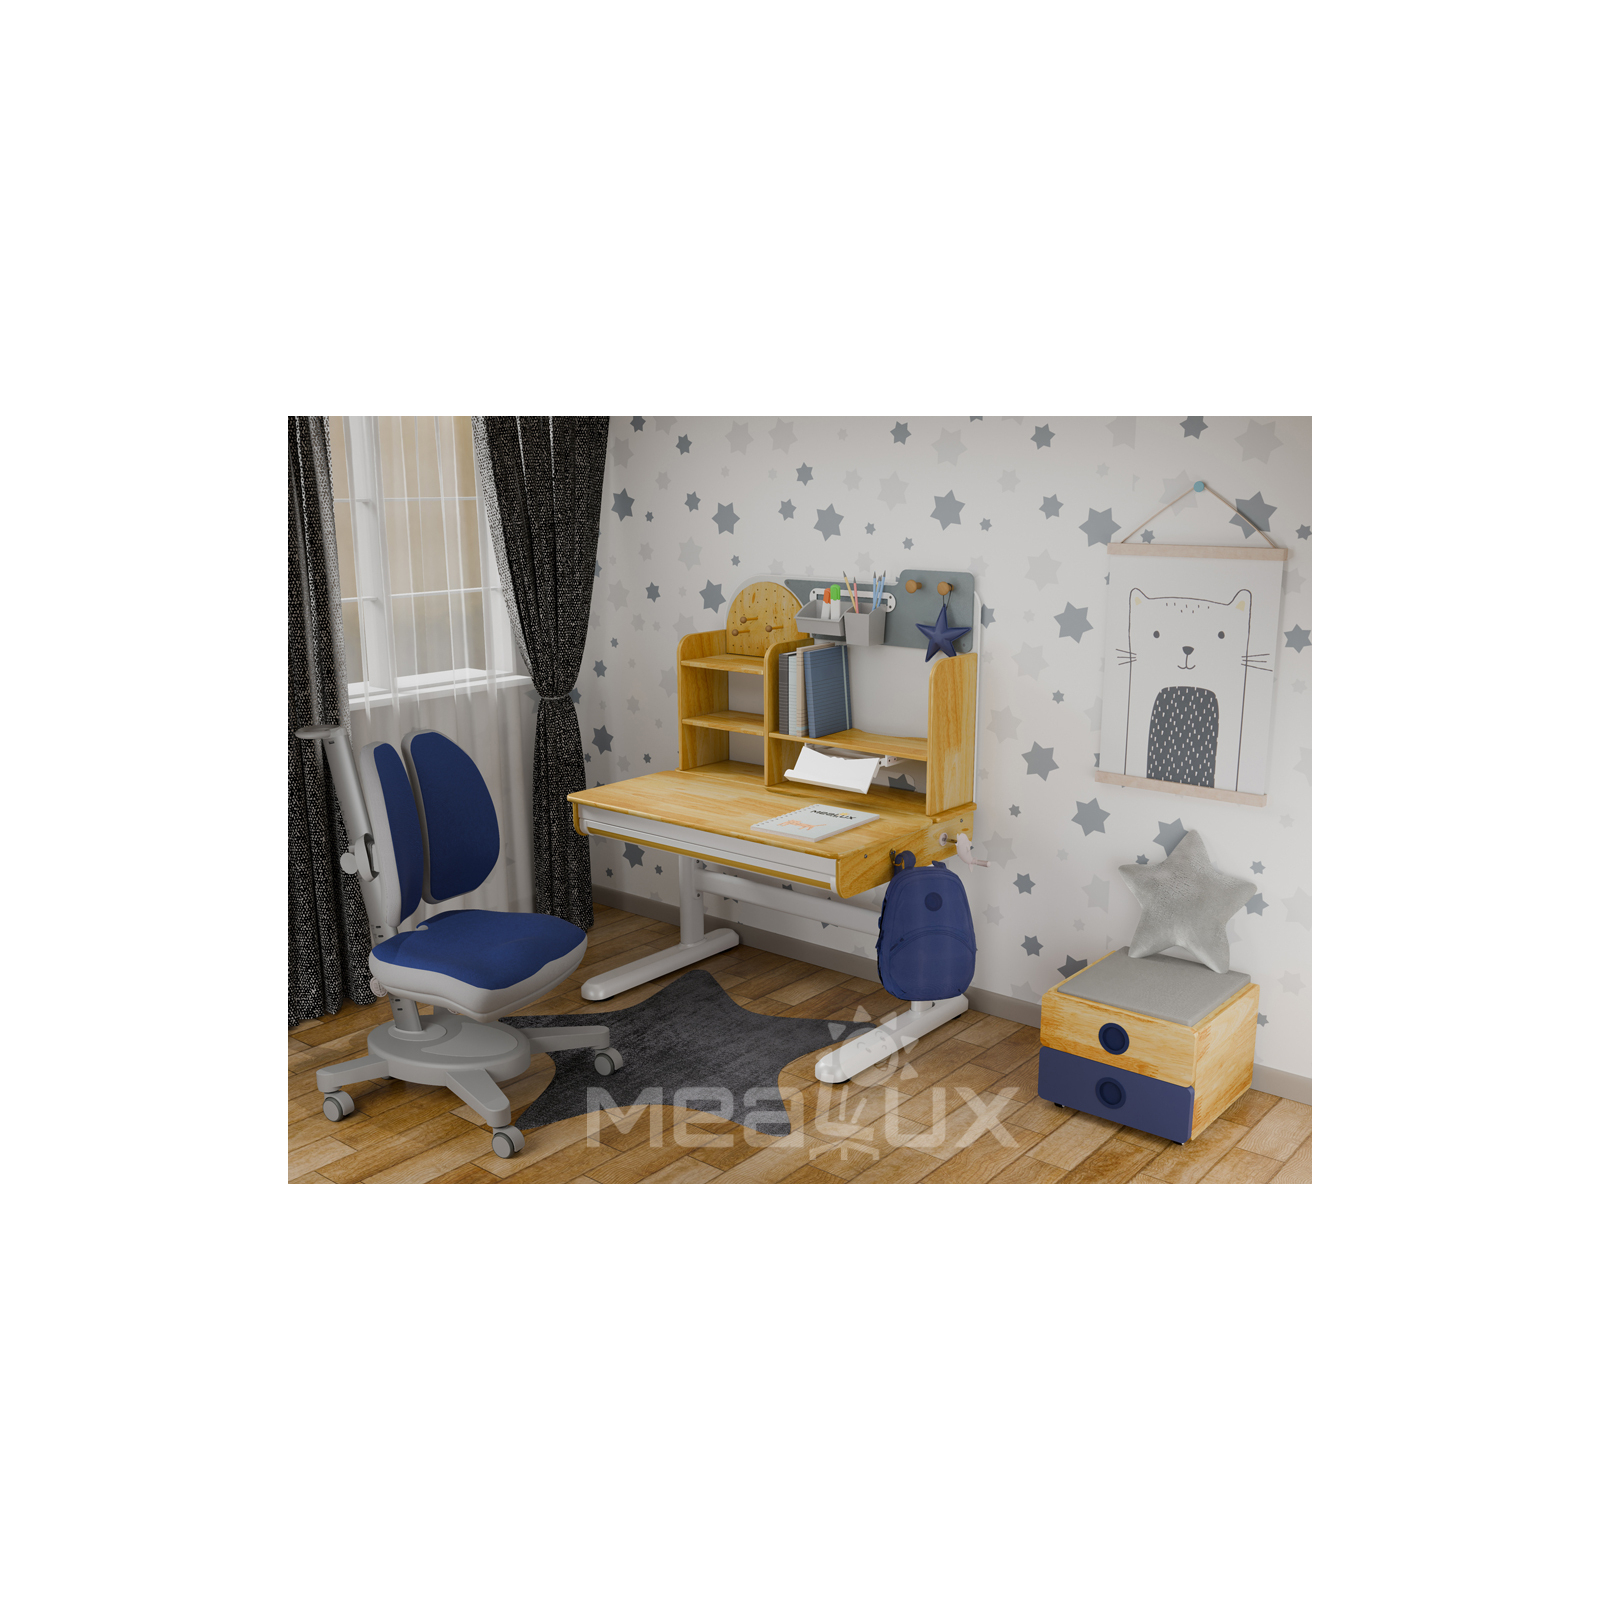 Парта с креслом Mealux Timberdesk S (парта+кресло+тумба) (BD-685 S+ box BD 920-2 BL+Y-115 DGB) изображение 2